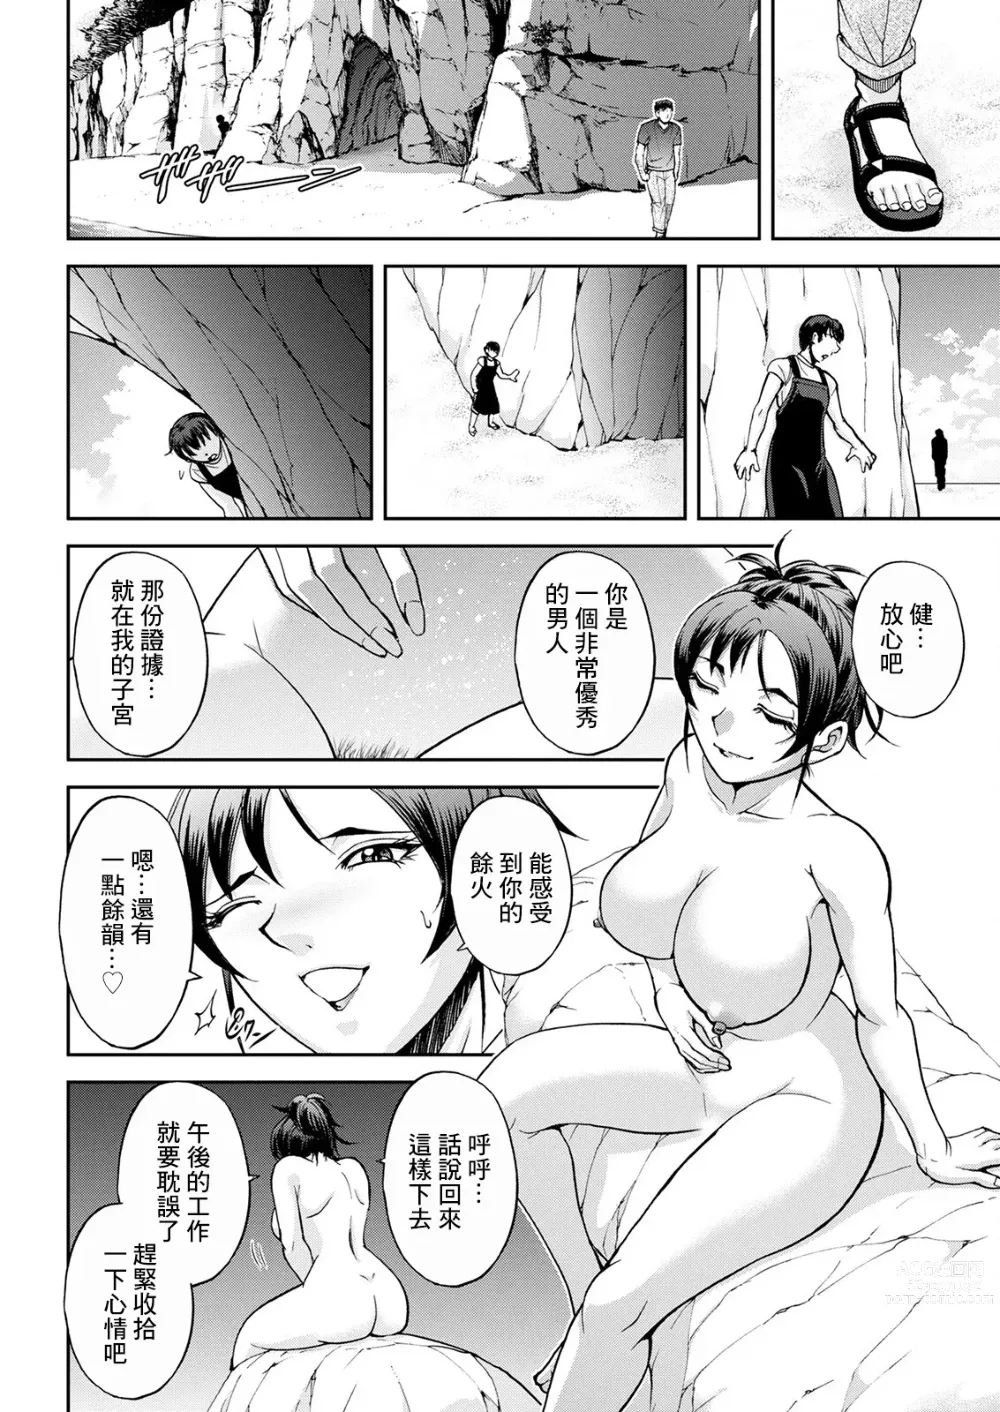 Page 12 of manga Umi no Ie no Nishigaki-san Kouhen